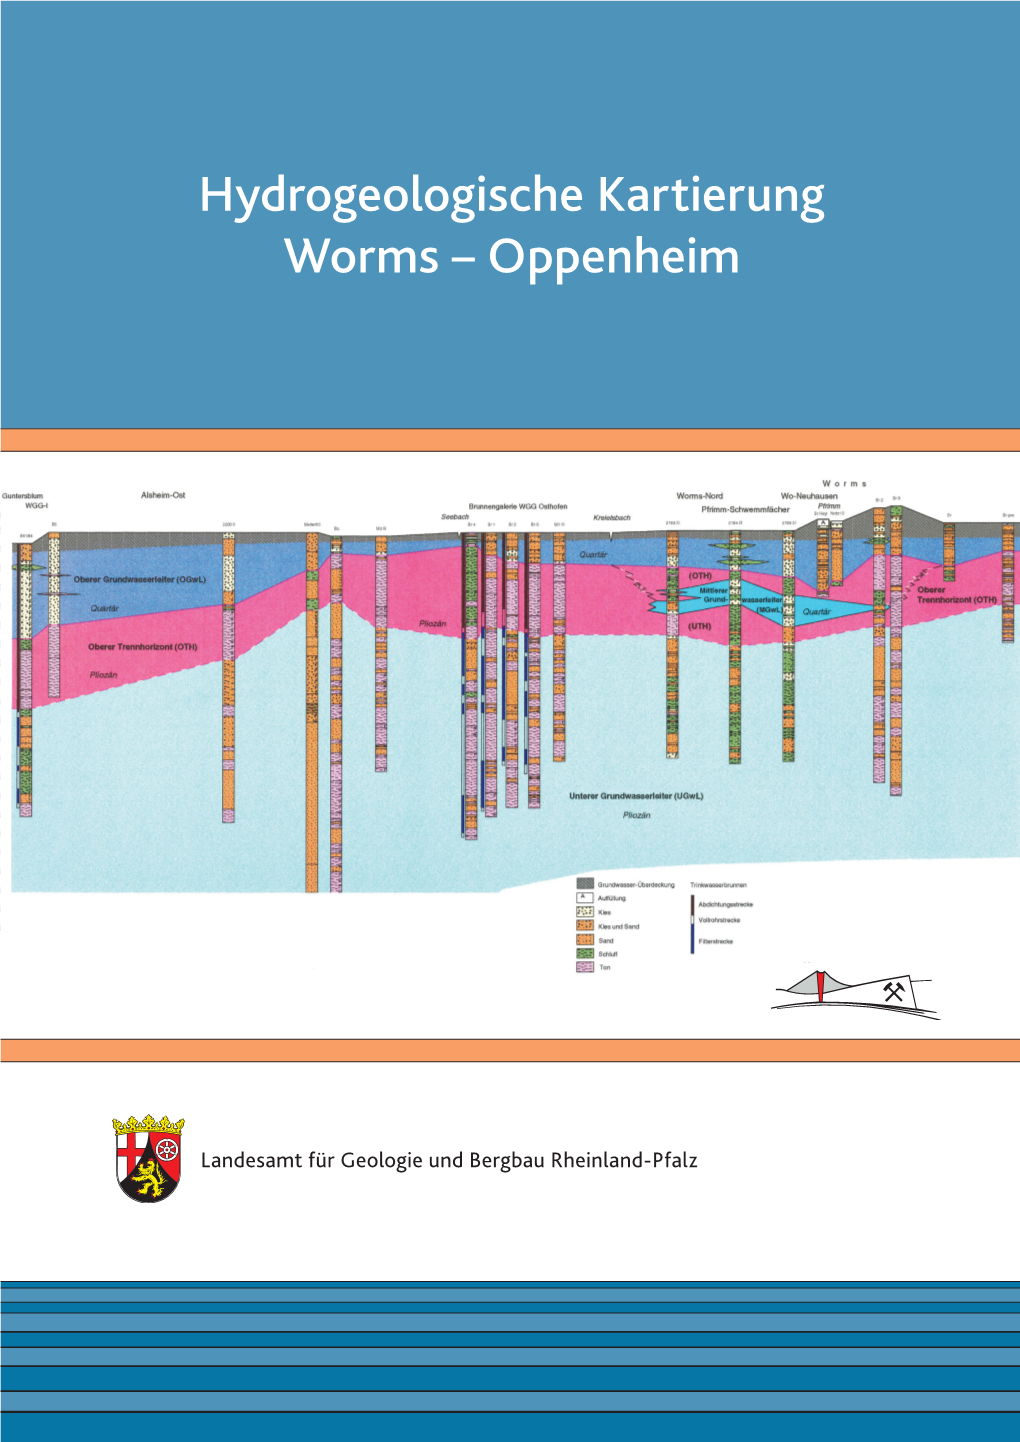 Hydrogeologische Kartierung Worms – Oppenheim